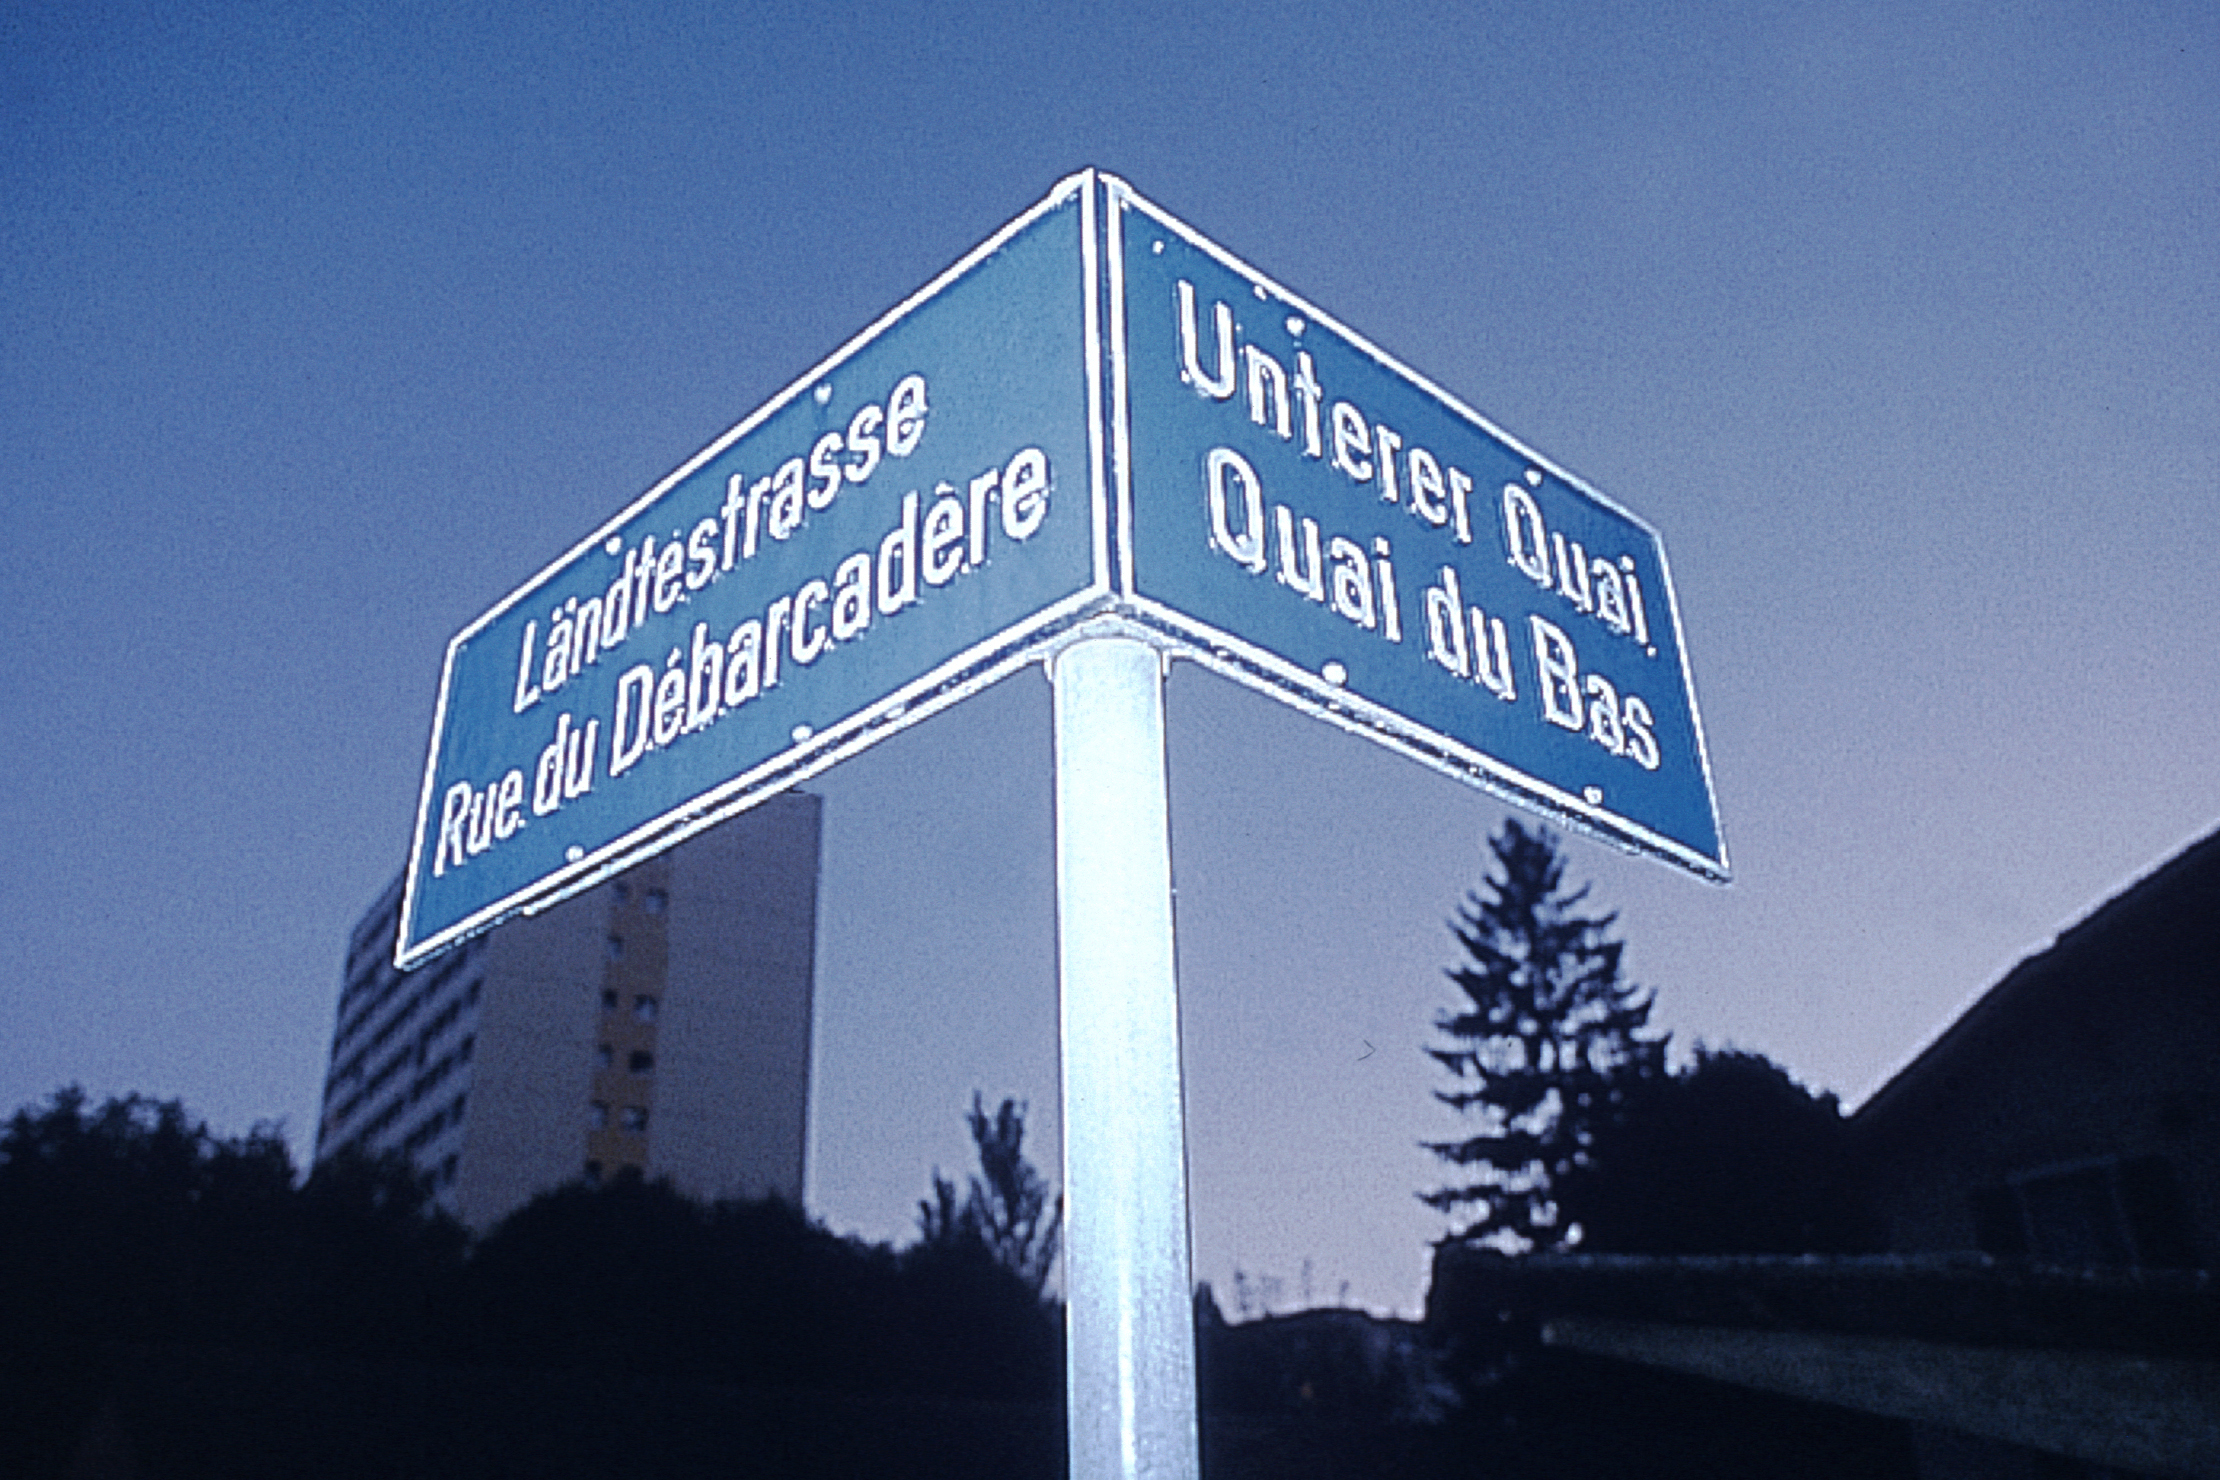 Zweisprachigkeit – Biel/Bienne, die grösste zweisprachige Stadt der Schweiz © Chambre économique Biel/Bienne Seeland